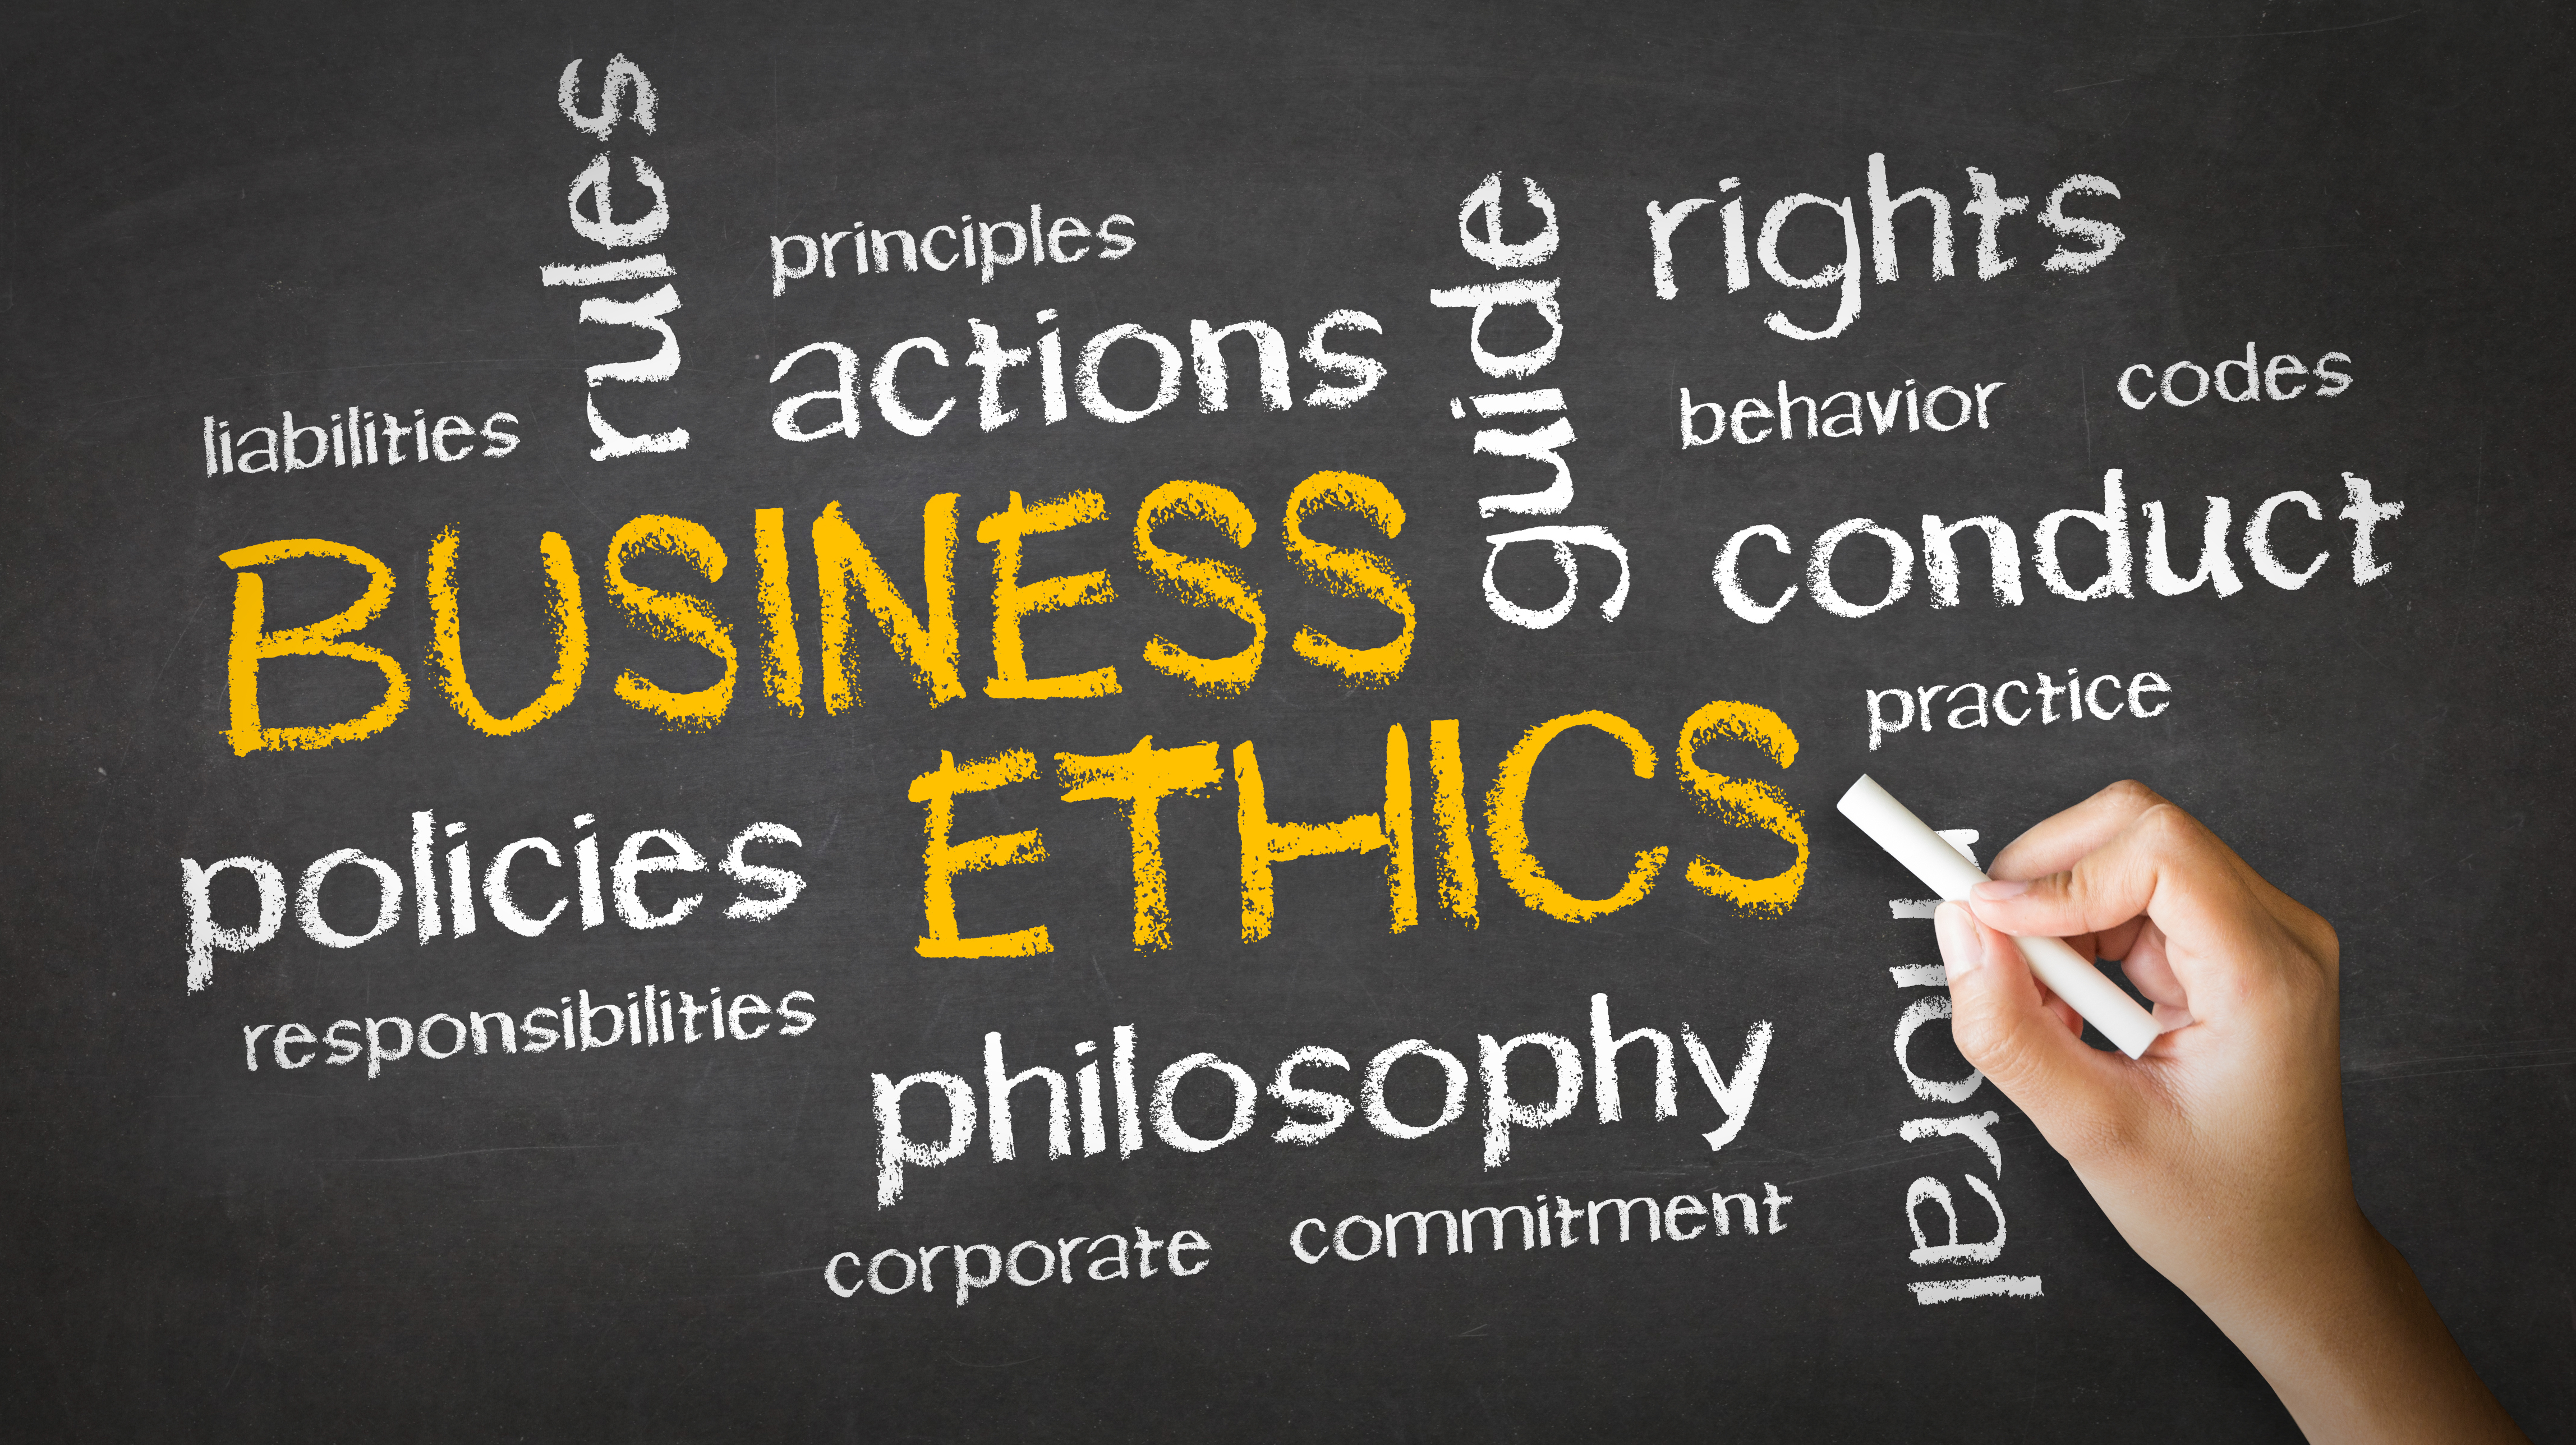 Journal of Business Ethics - springercom